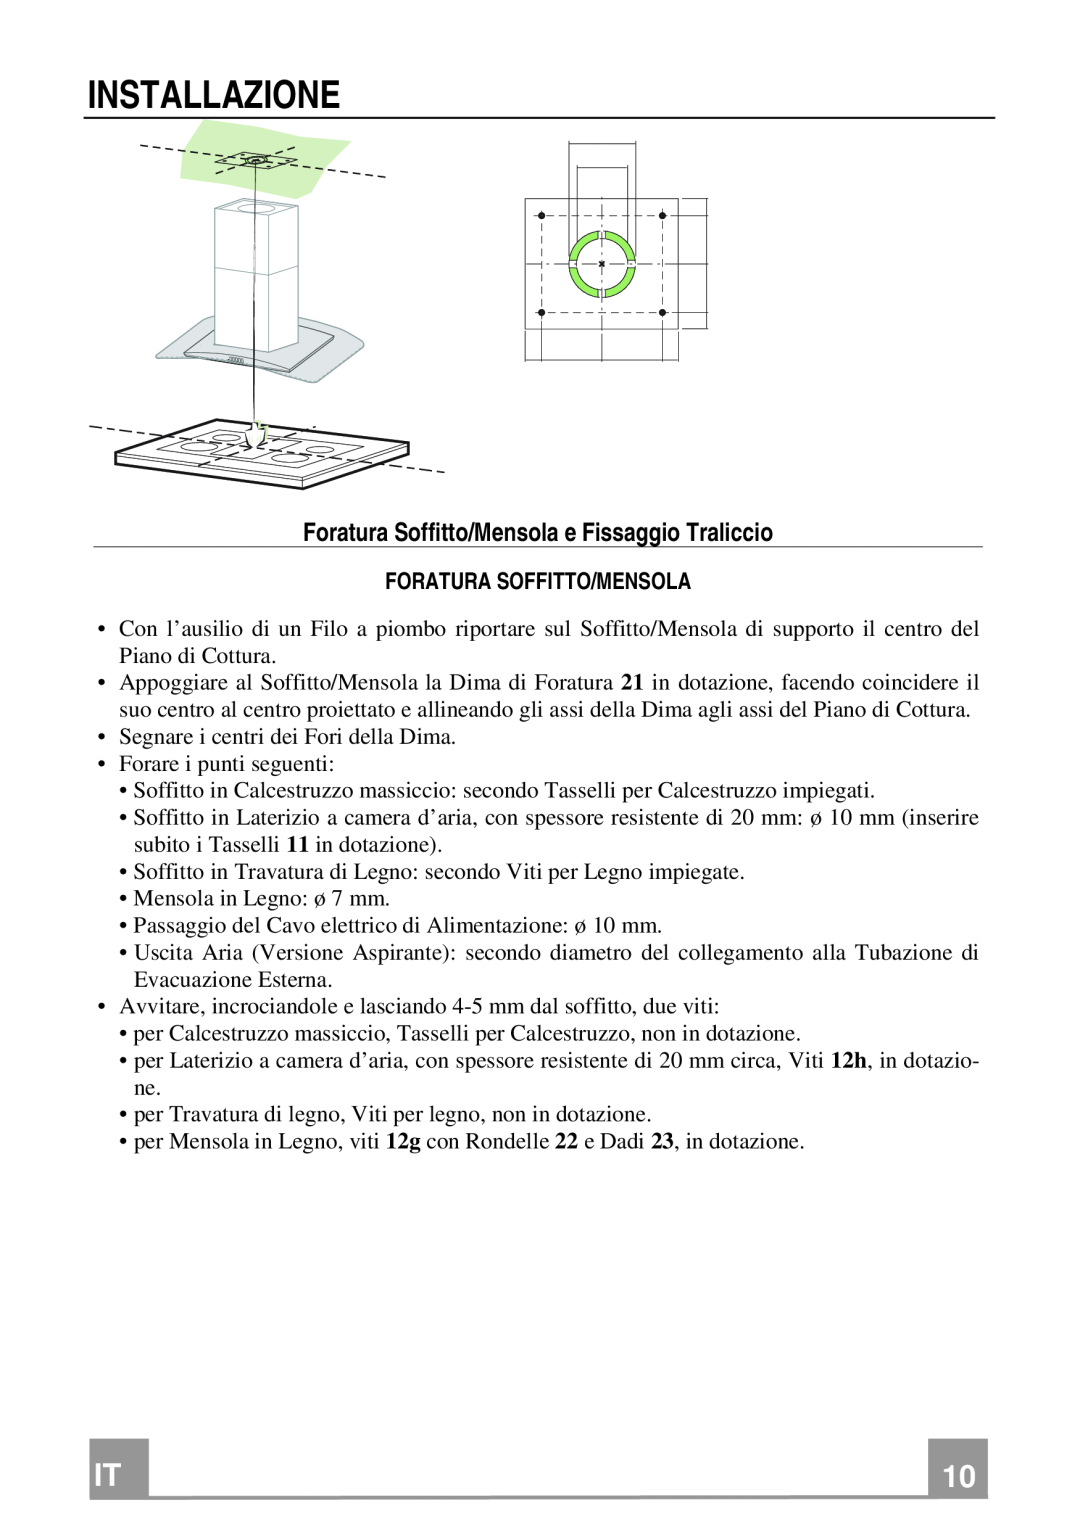 Franke Consumer Products FGC 906 I manual Installazione, Foratura Soffitto/Mensola e Fissaggio Traliccio 